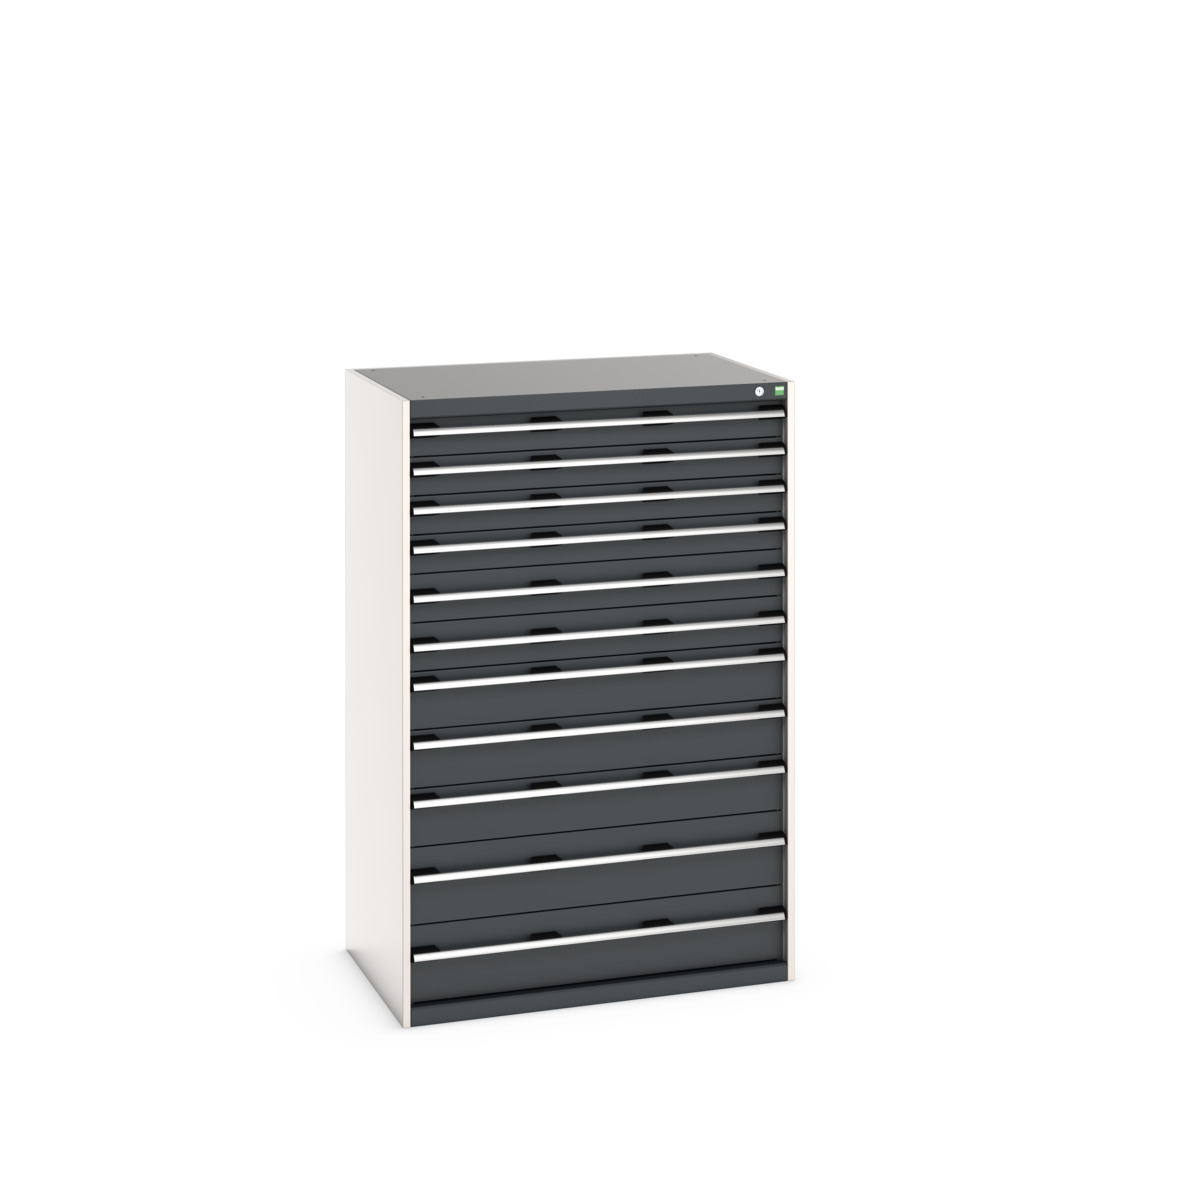 40029038.19V - cubio drawer cabinet